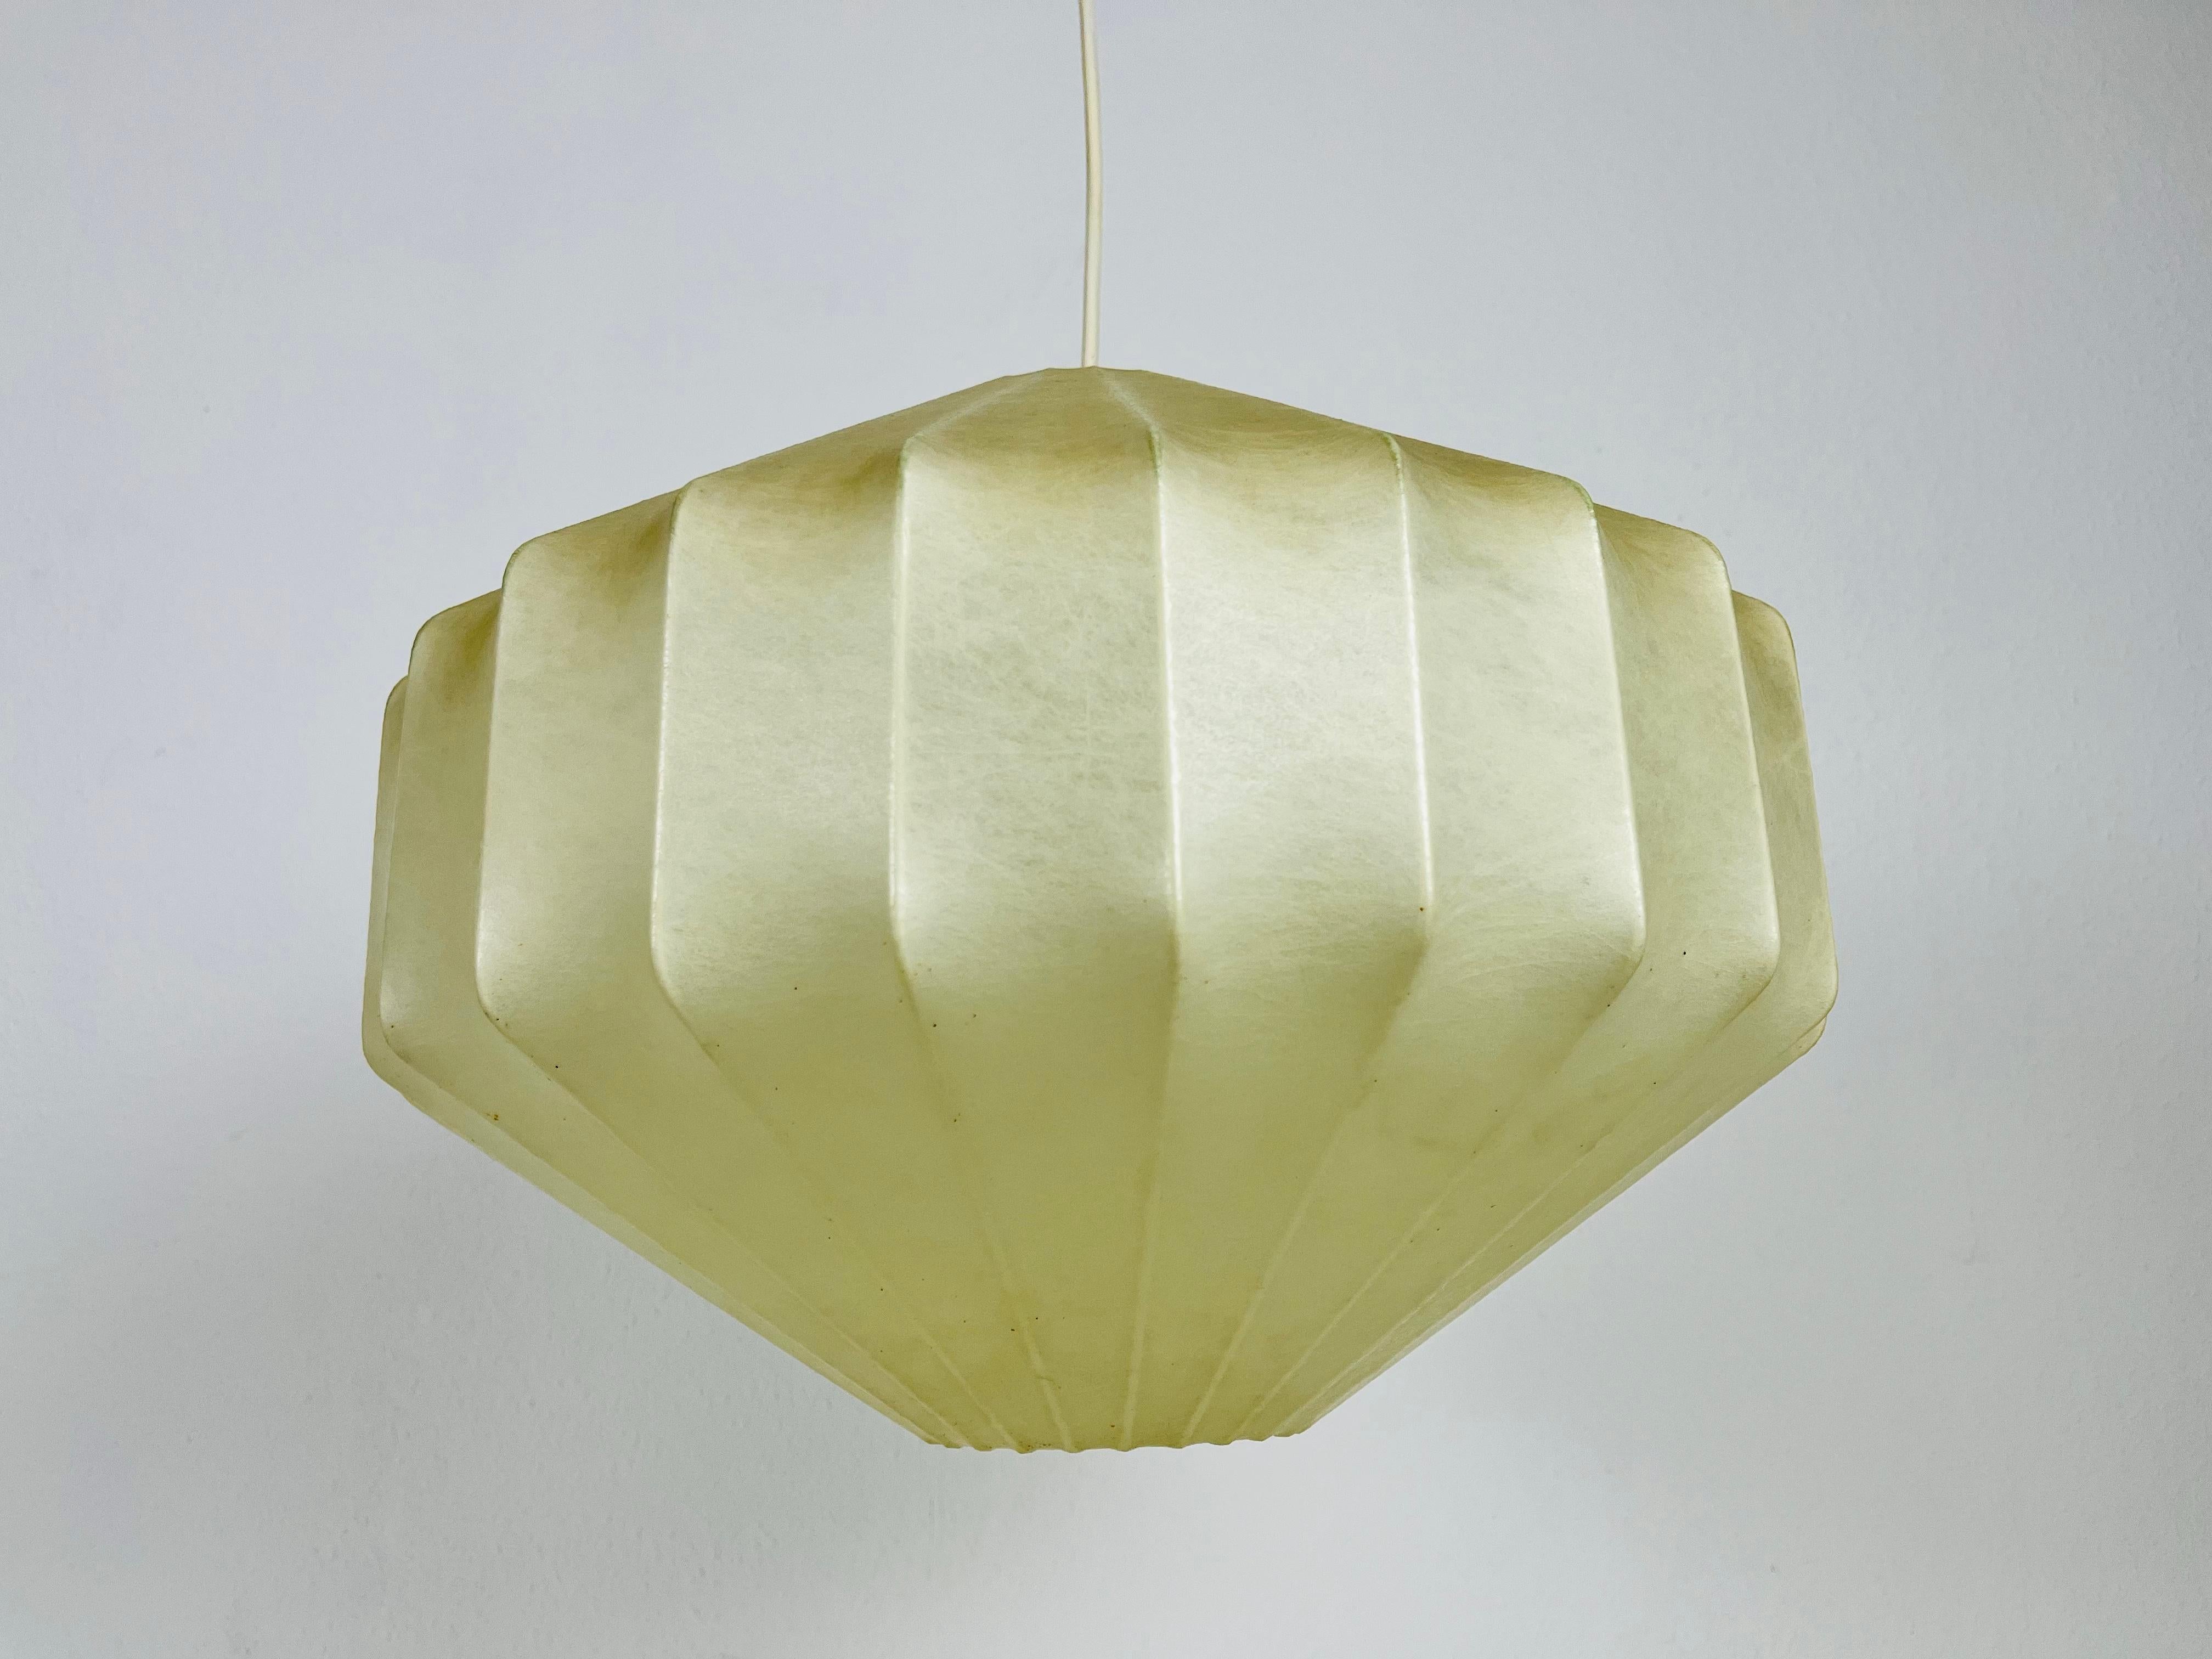 Lampe pendante cocon en losange fabriquée en Italie dans les années 1960. La lampe suspendue présente un design similaire aux luminaires réalisés par Achille Castiglioni. L'abat-jour est en résine d'origine et a une forme de losange.

Mesures